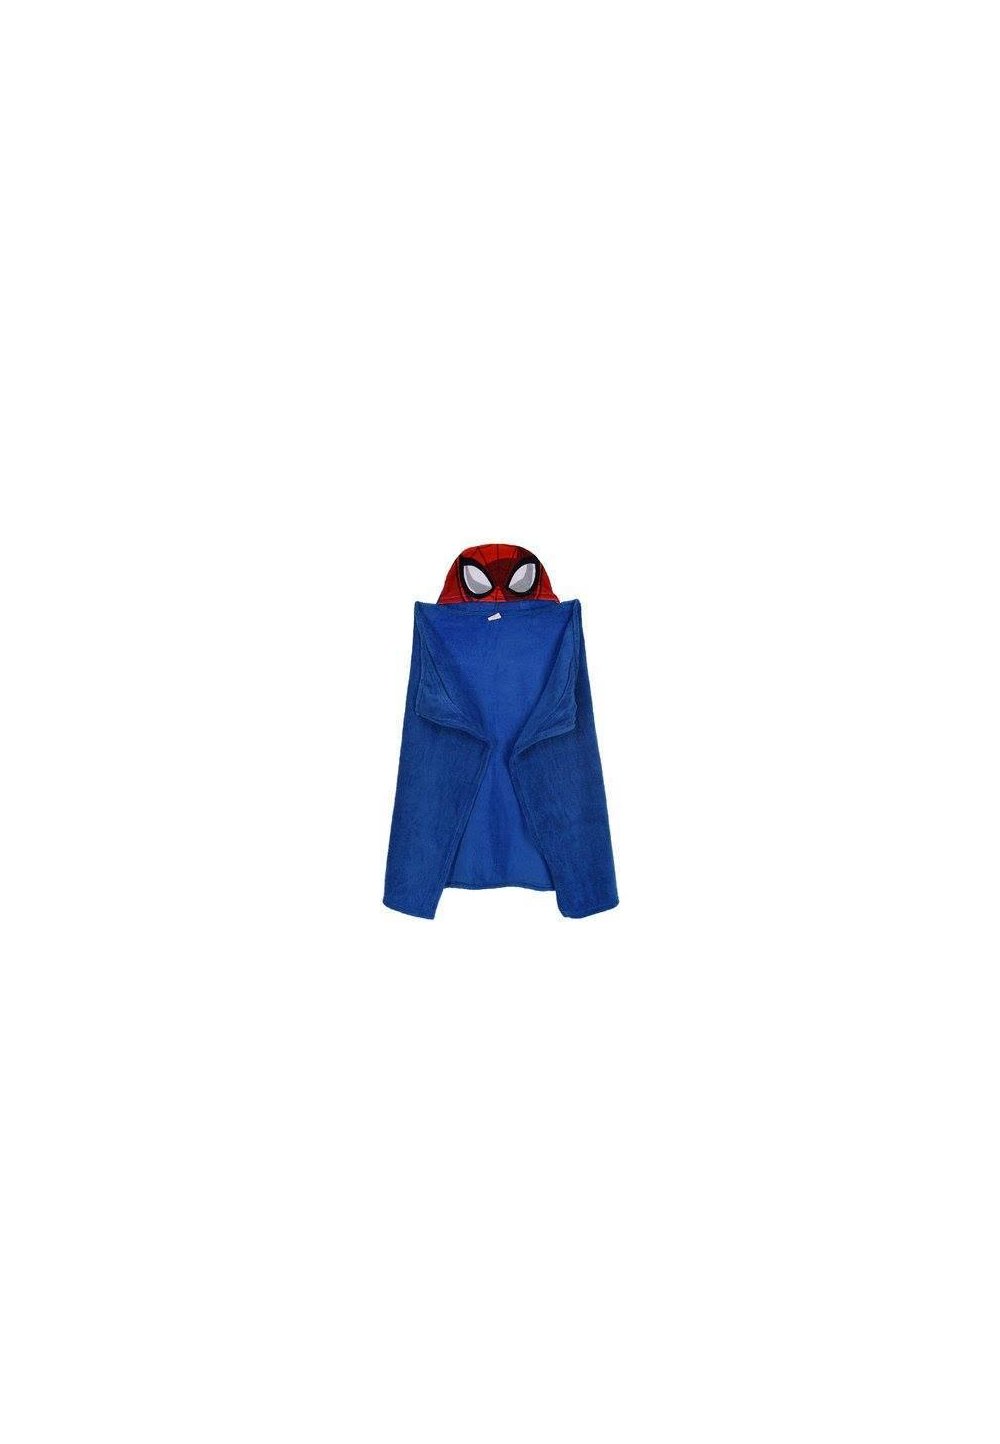 Paturica, pluss cu gluga, albastra, Spider Man, 80 x 120 cm